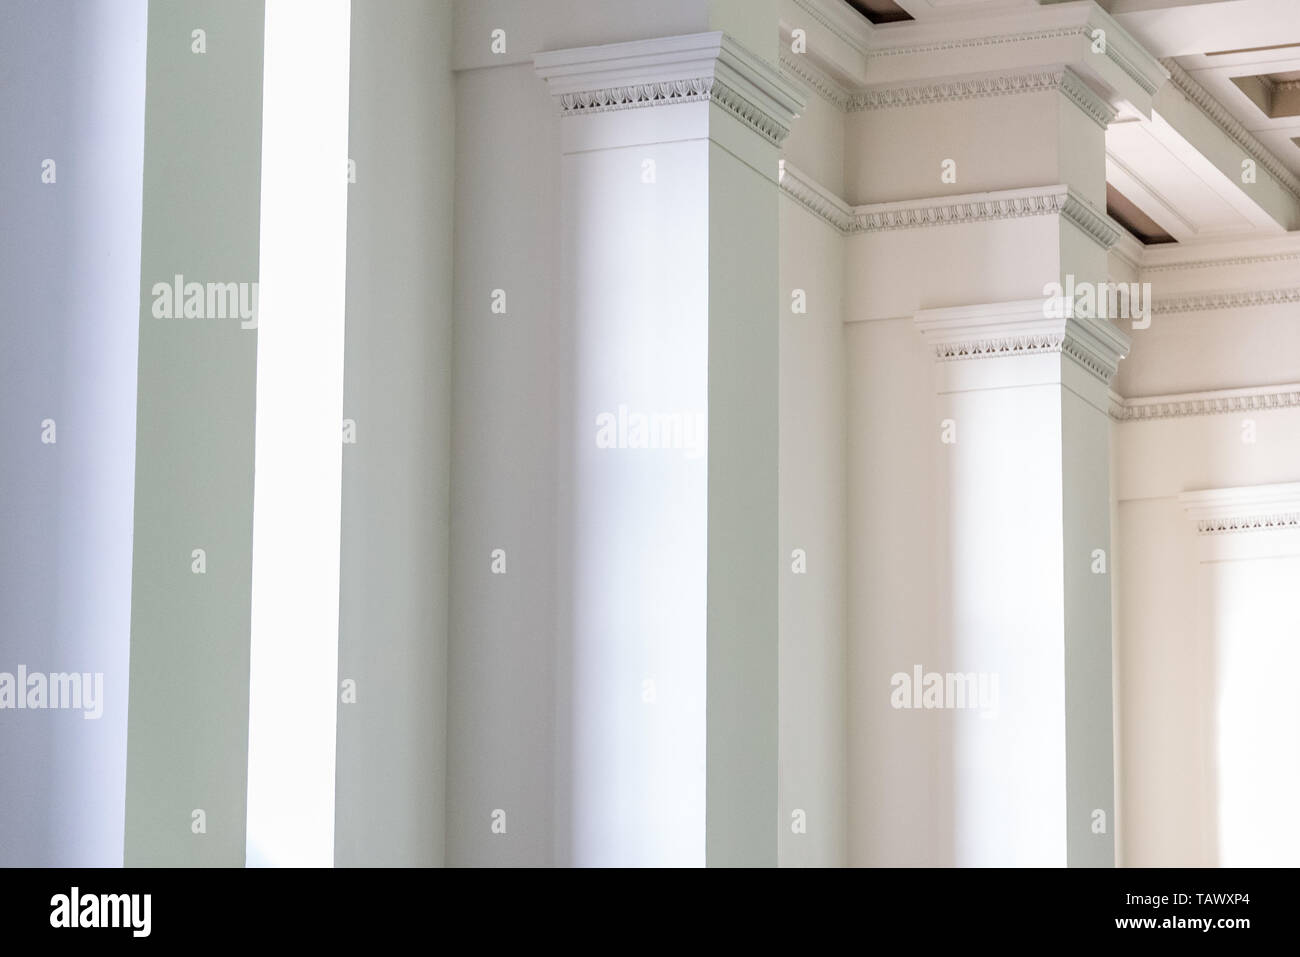 Hintergrund der Innenwand mit weißen Säulen in der Zeile Stockfoto